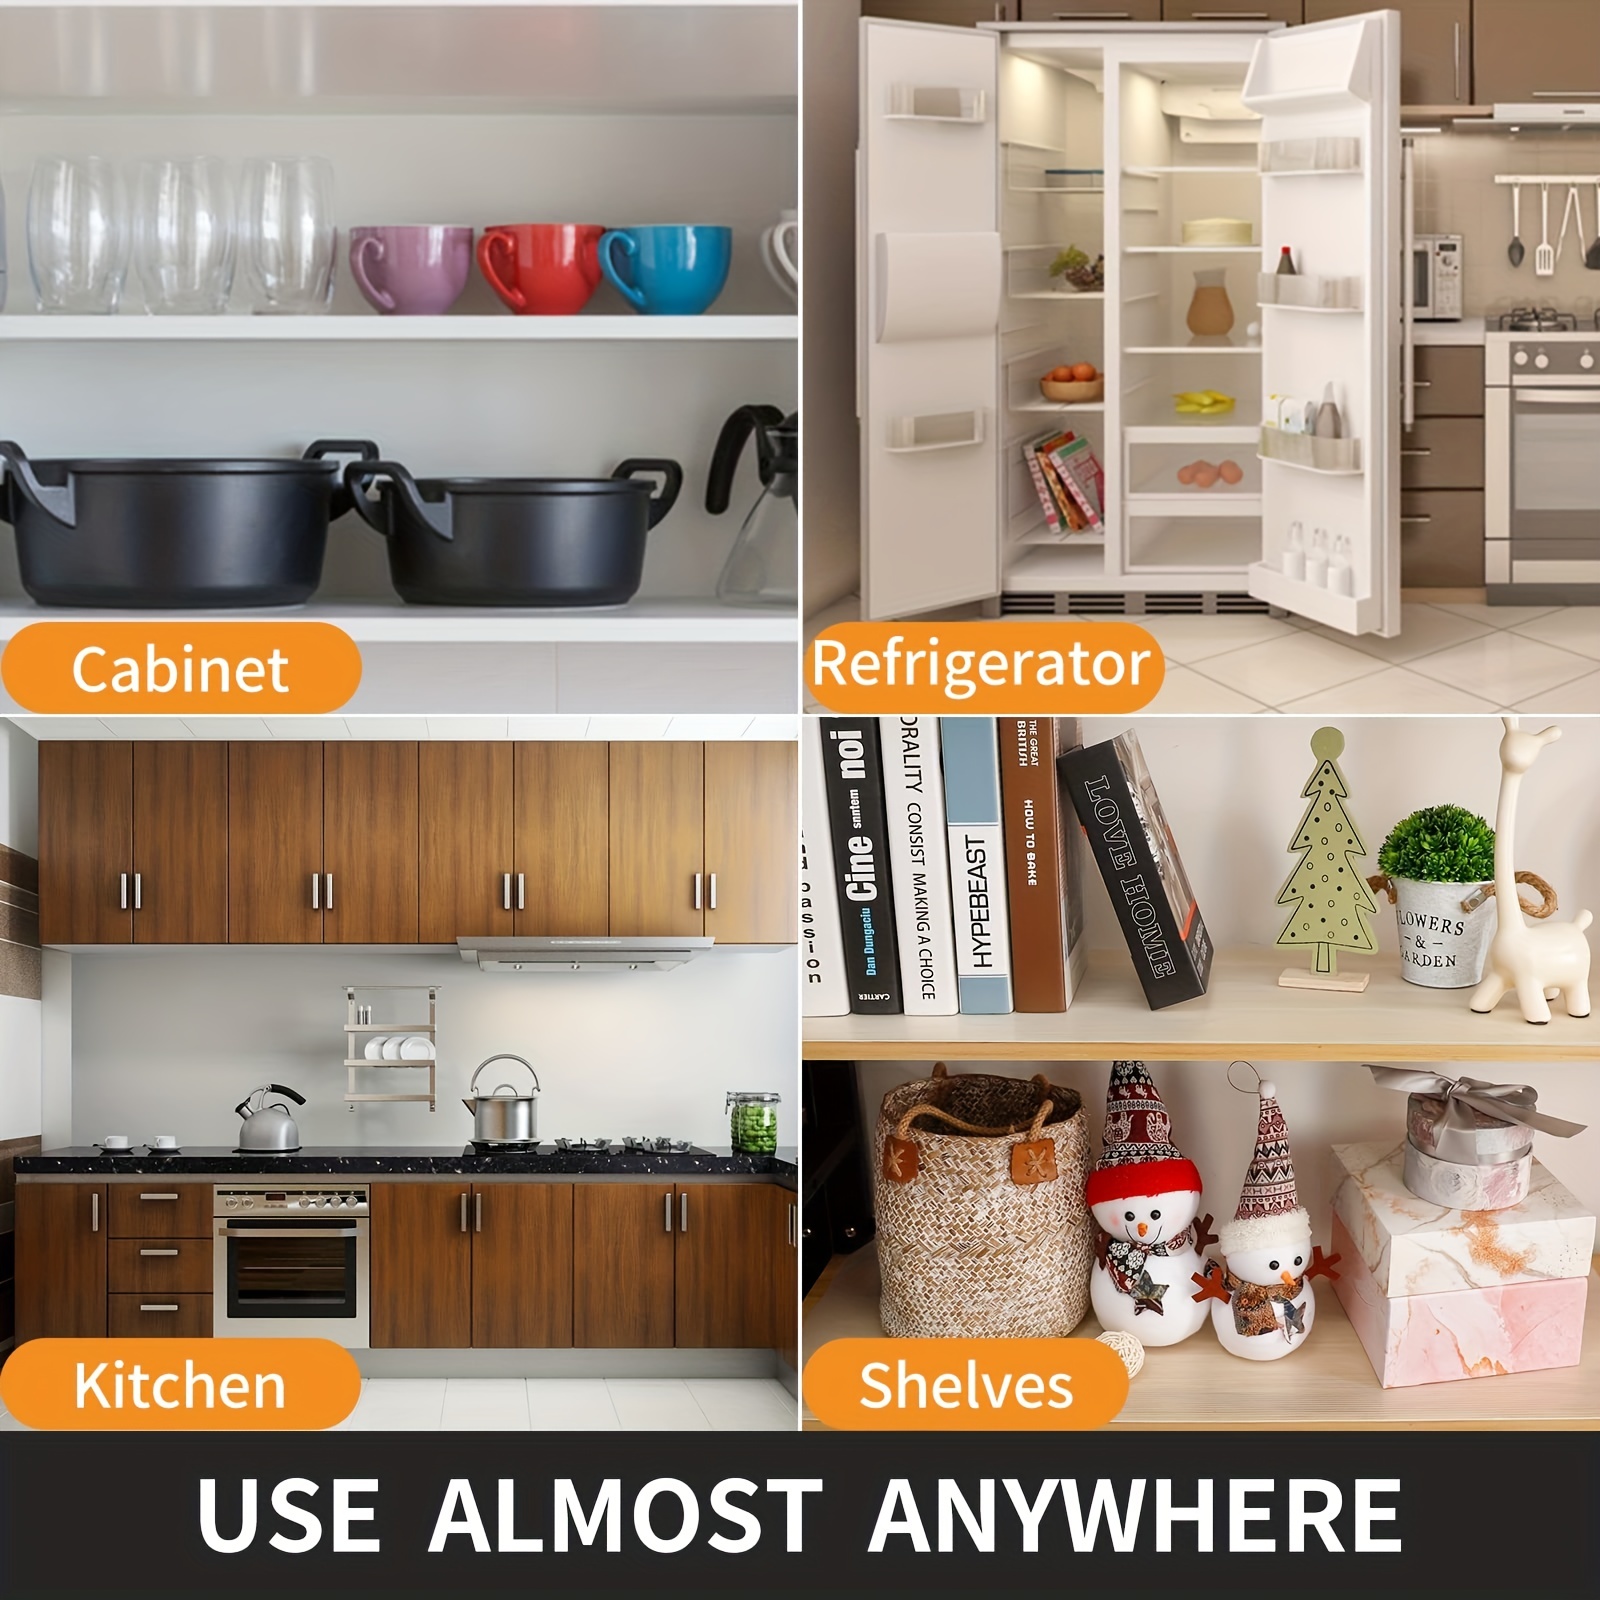 Kitchen Shelf Liner, Non-Slip Cabinet Liner, Washable Oil-Proof for Kitchen